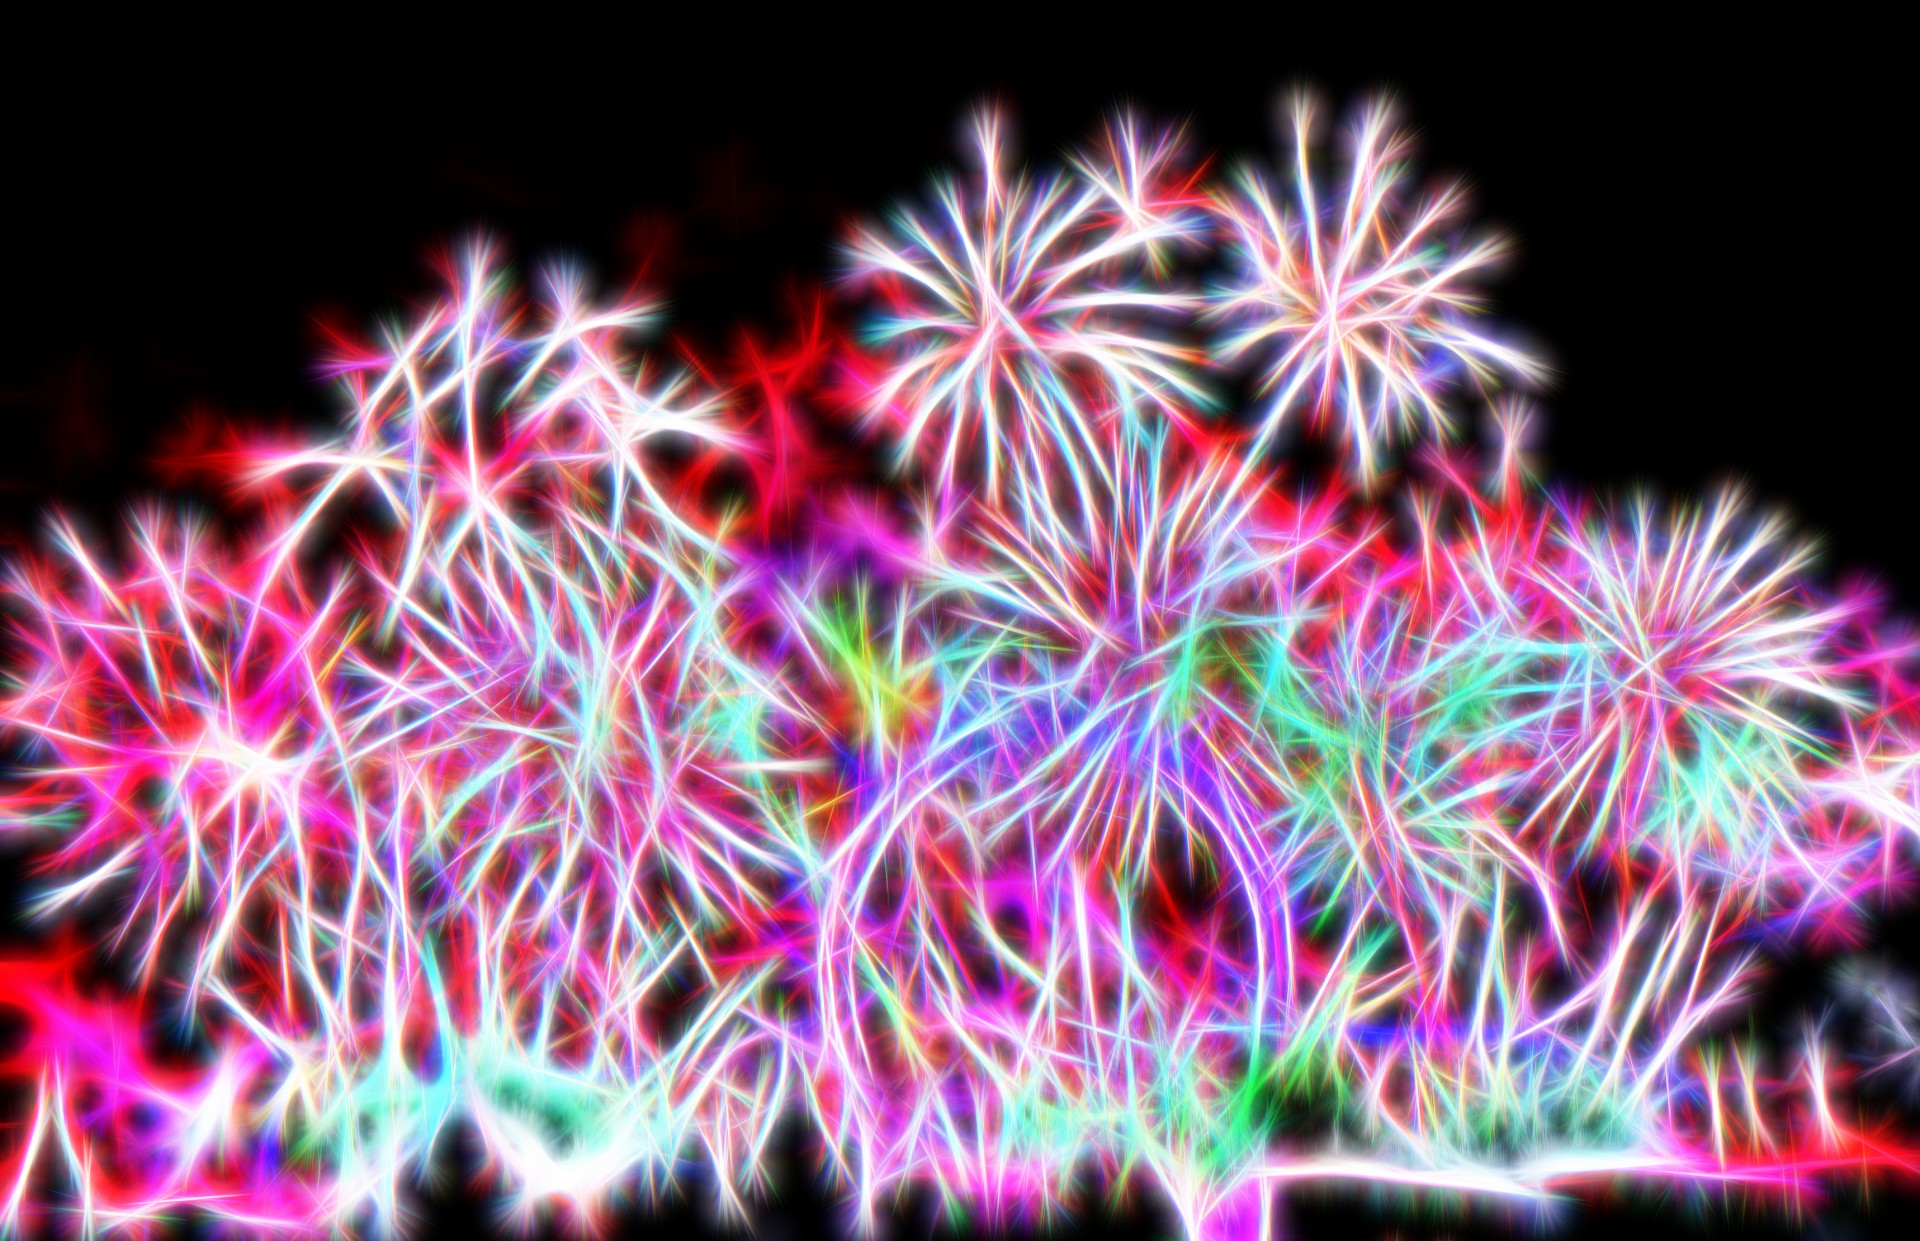 fractal fireworks display pattern fractal flames fractal art free photo